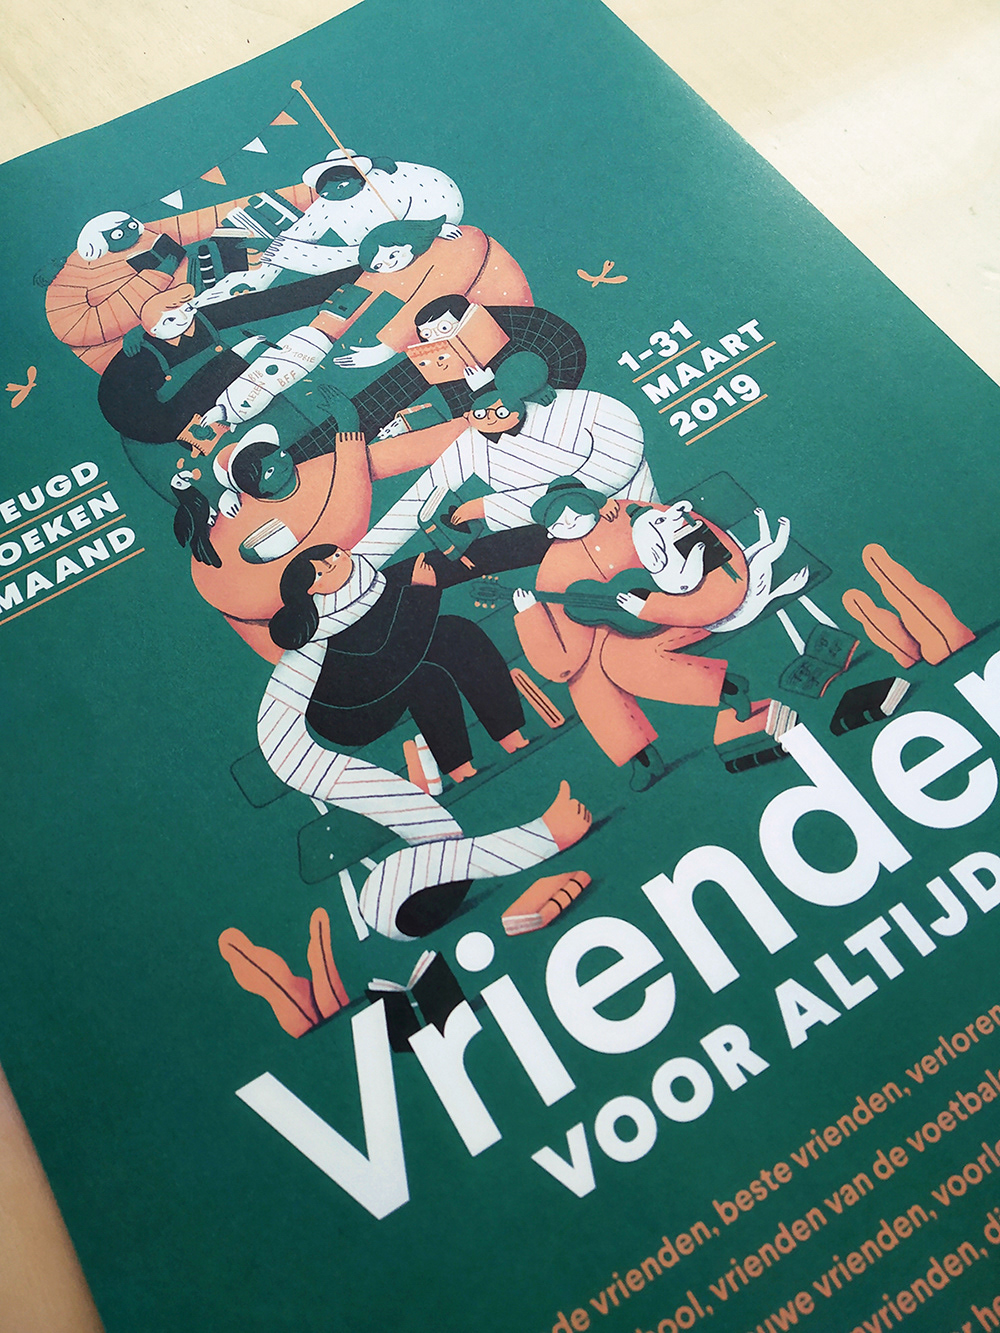 jeugdboekenmaand belgisch België books Reading friendship campaign friends illustratie vriendschap